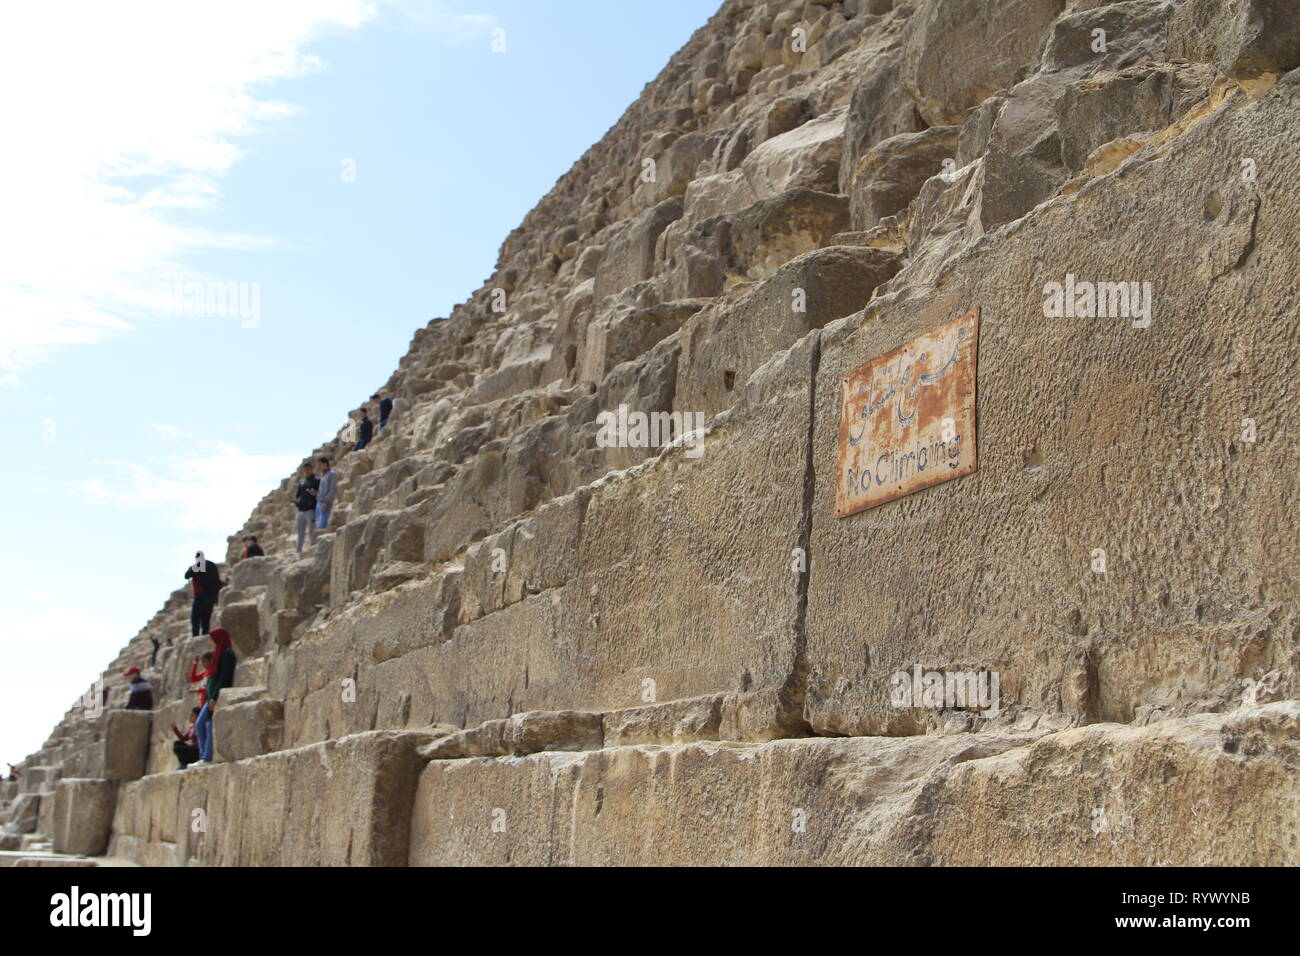 Les gens l'ascension de la pyramide de Khafré malgré l'absence de signes d'escalade sur la première rangée de blocs, complexe Pyramide de Gizeh, Le Caire, Egypte Banque D'Images